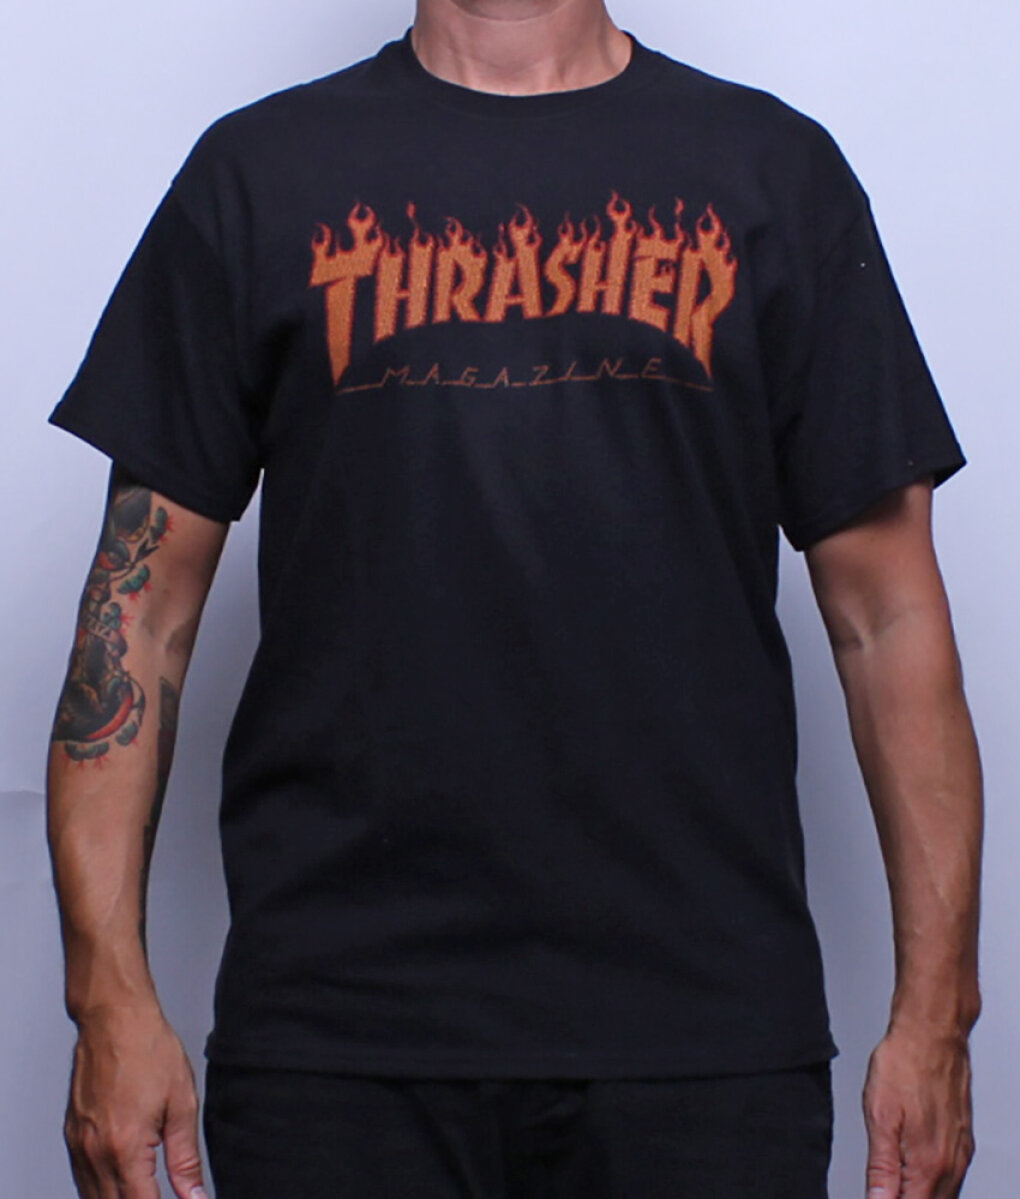 Sidewalk Skateshop - T-shirts - Thrasher - s/s Flame half tone